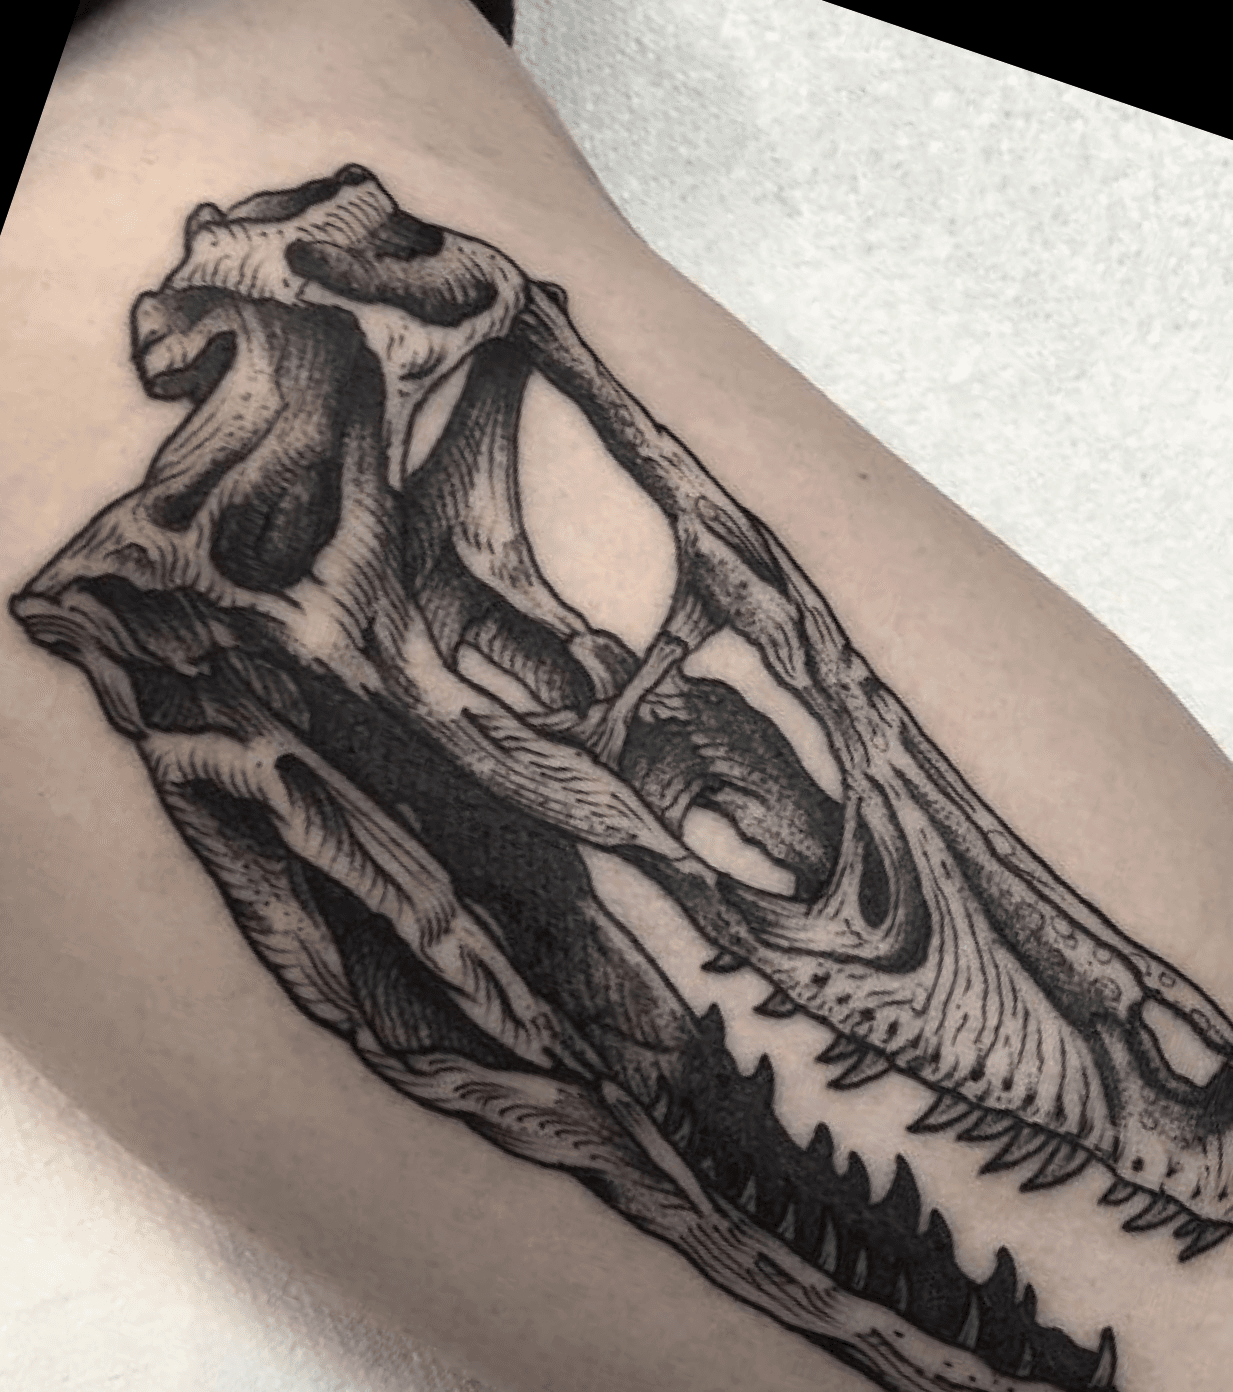 raptor skull drawing